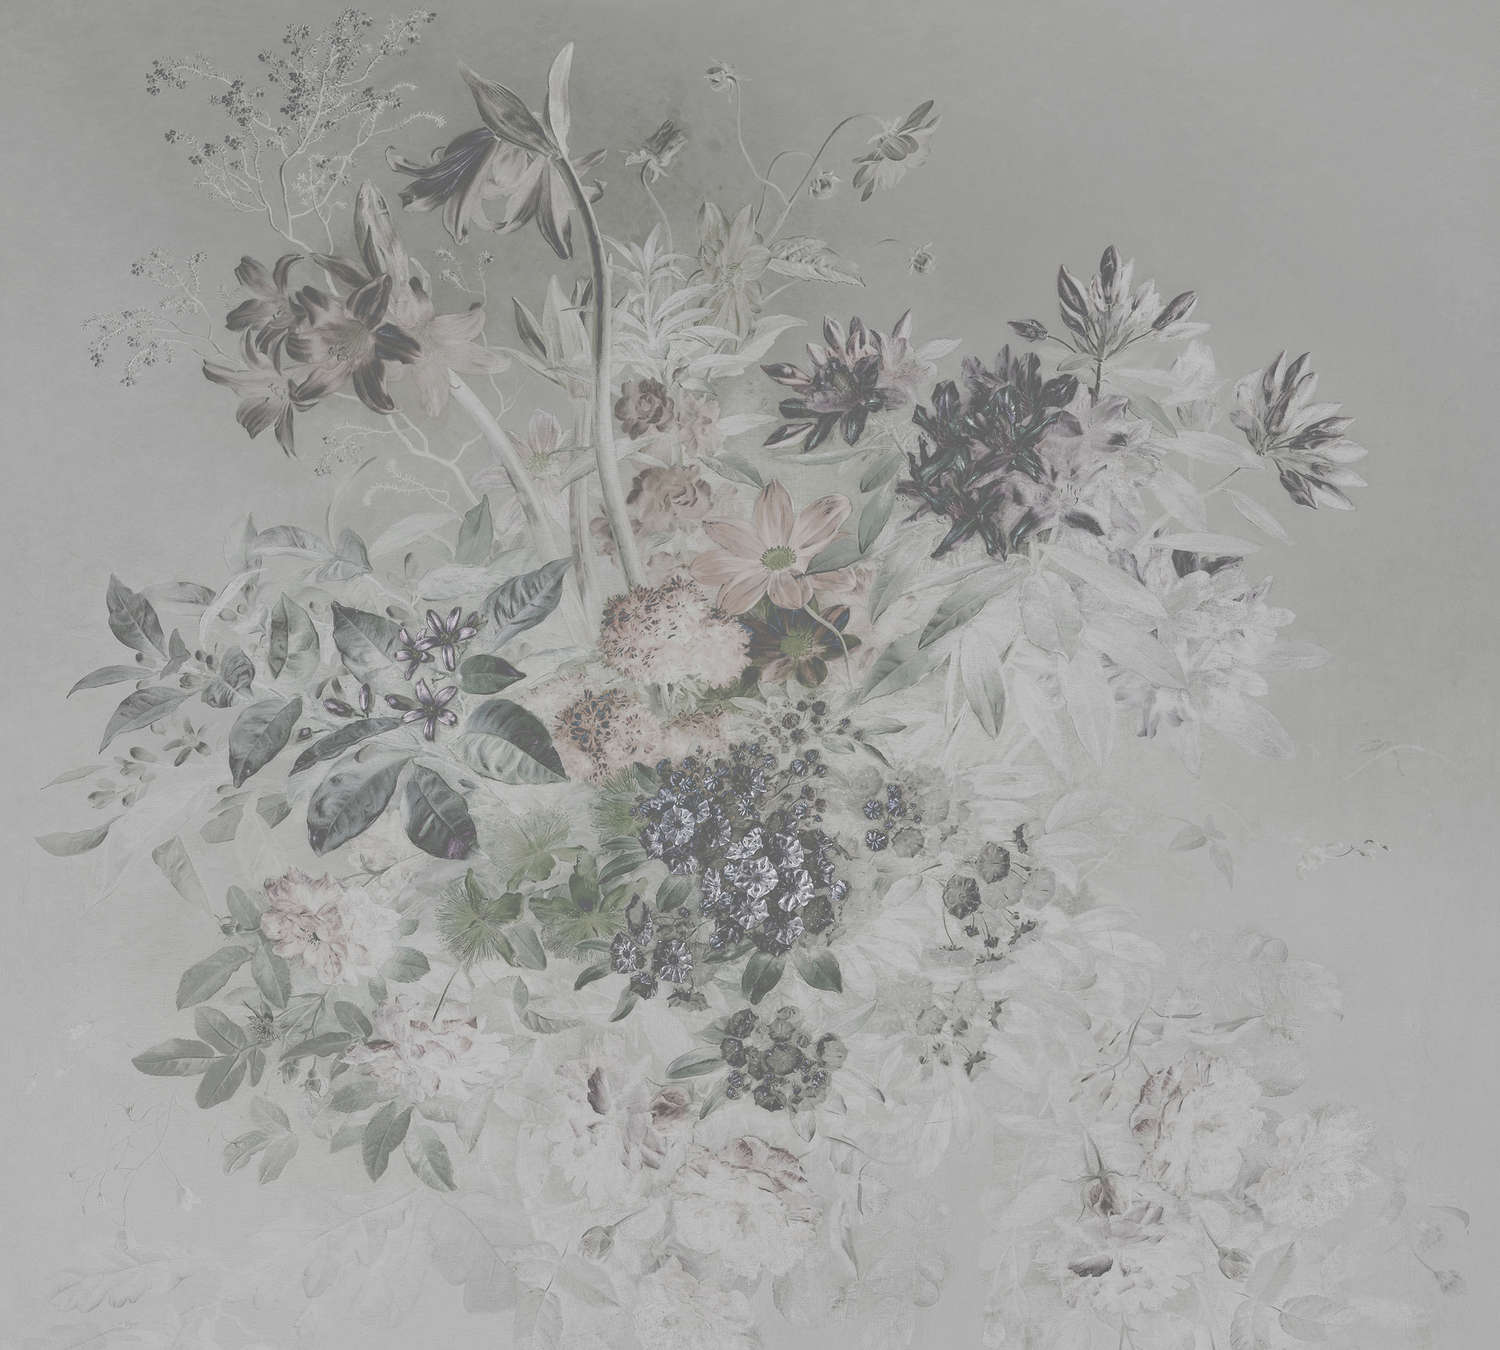             Fototapete romantisches Blumen Design – Grau, Weiß
        